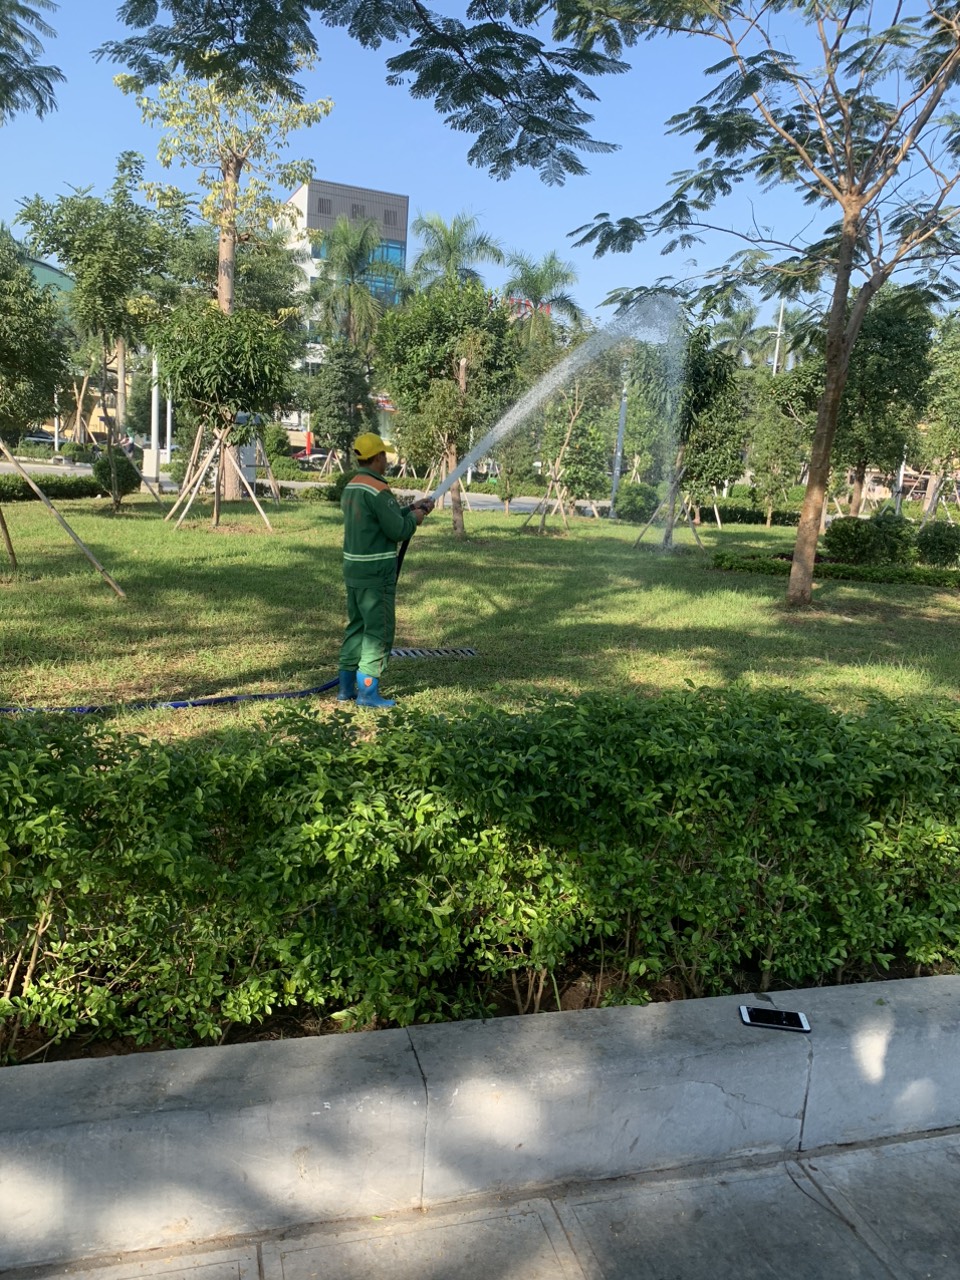  Những người gìn giữ “lá phổi xanh” cho dải trung tâm thành phố Hải Phòng - Ảnh 1.